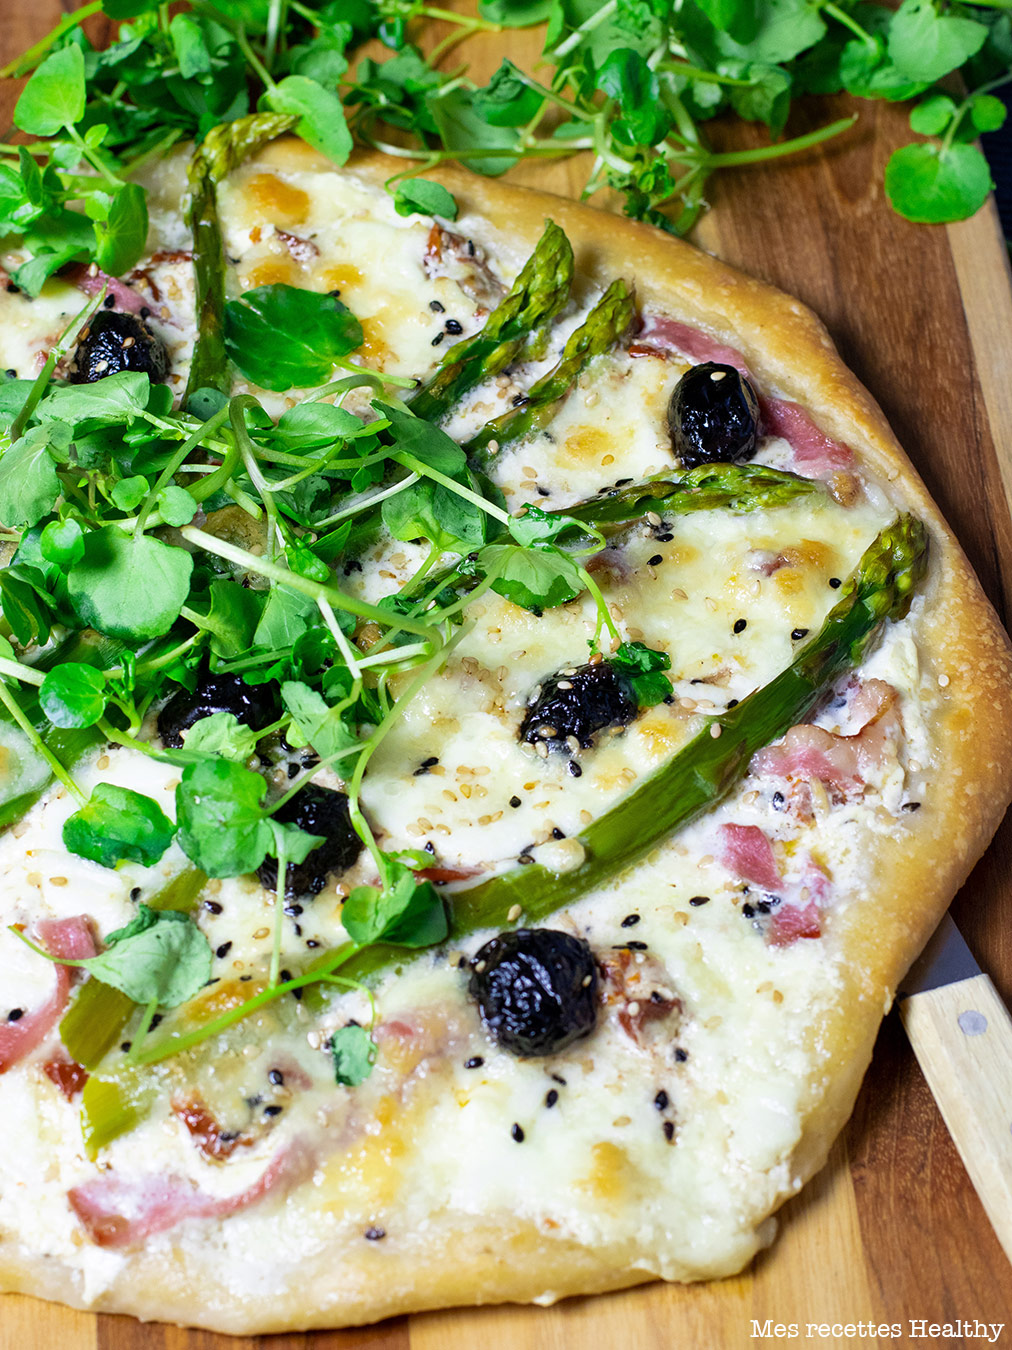 recette healthy-pizza aux asperges-mozzarella-olive-bacon